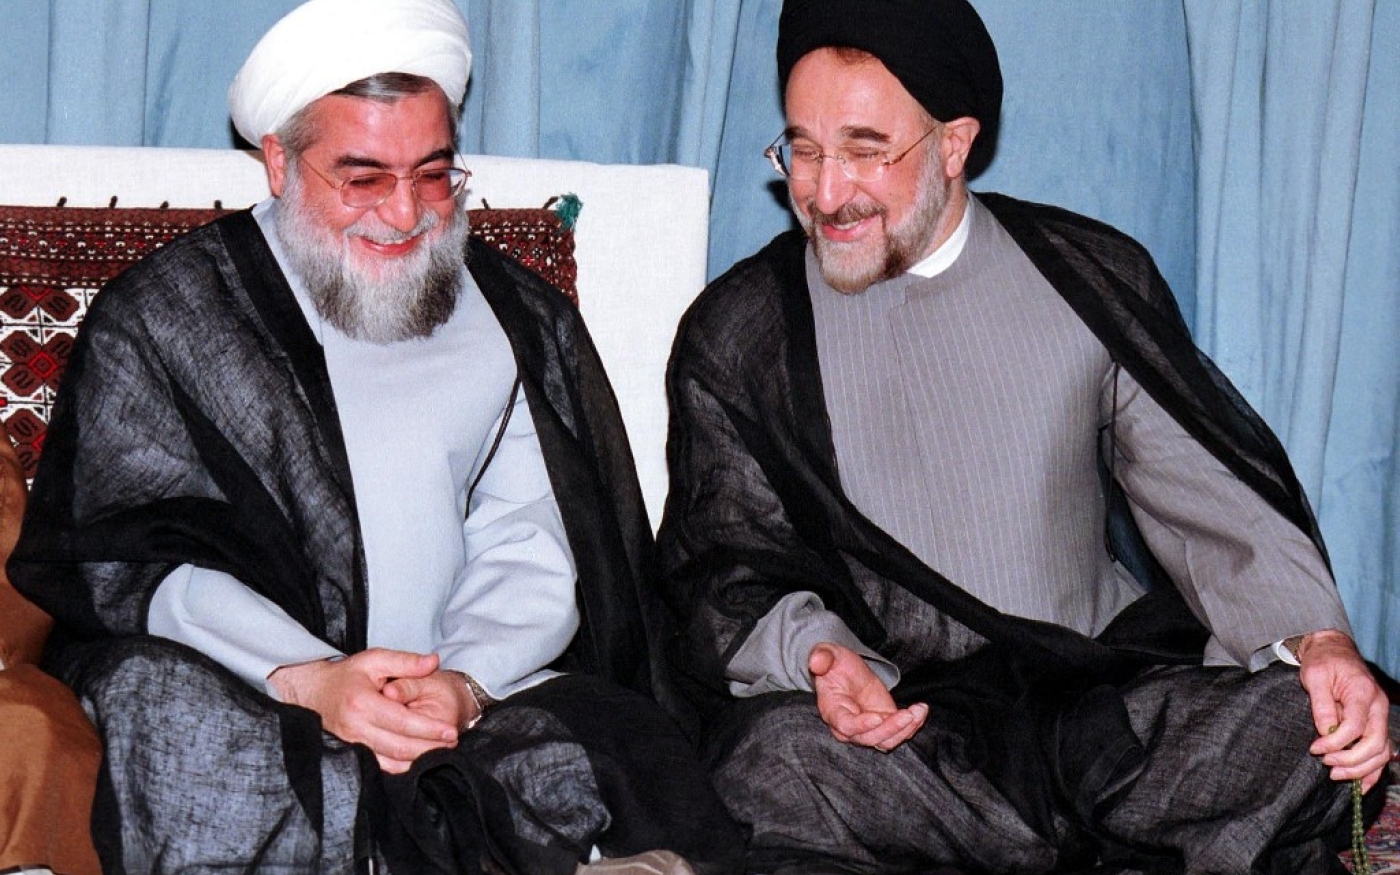 Le président iranien Mohammad Khatami (à droite) rit aux côtés d’Hassan Rohani, alors ancien vice-président du Parlement et nouveau membre du Conseil des experts iranien, en 2000 (AFP)